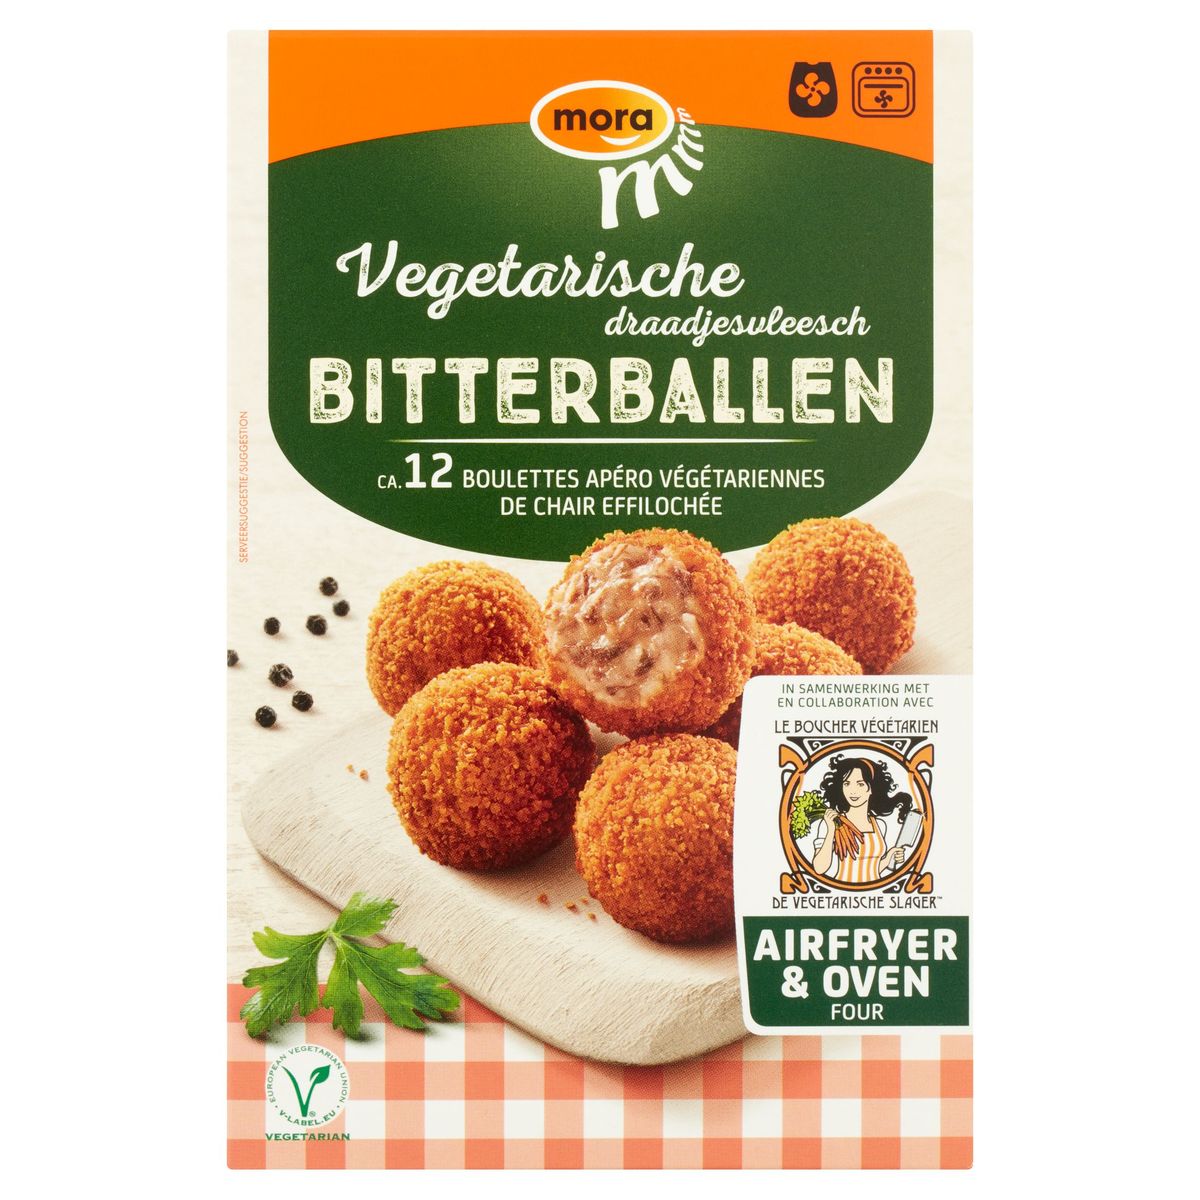 Mora Vegetarische Draadjesvleesch Bitterballen 240 g